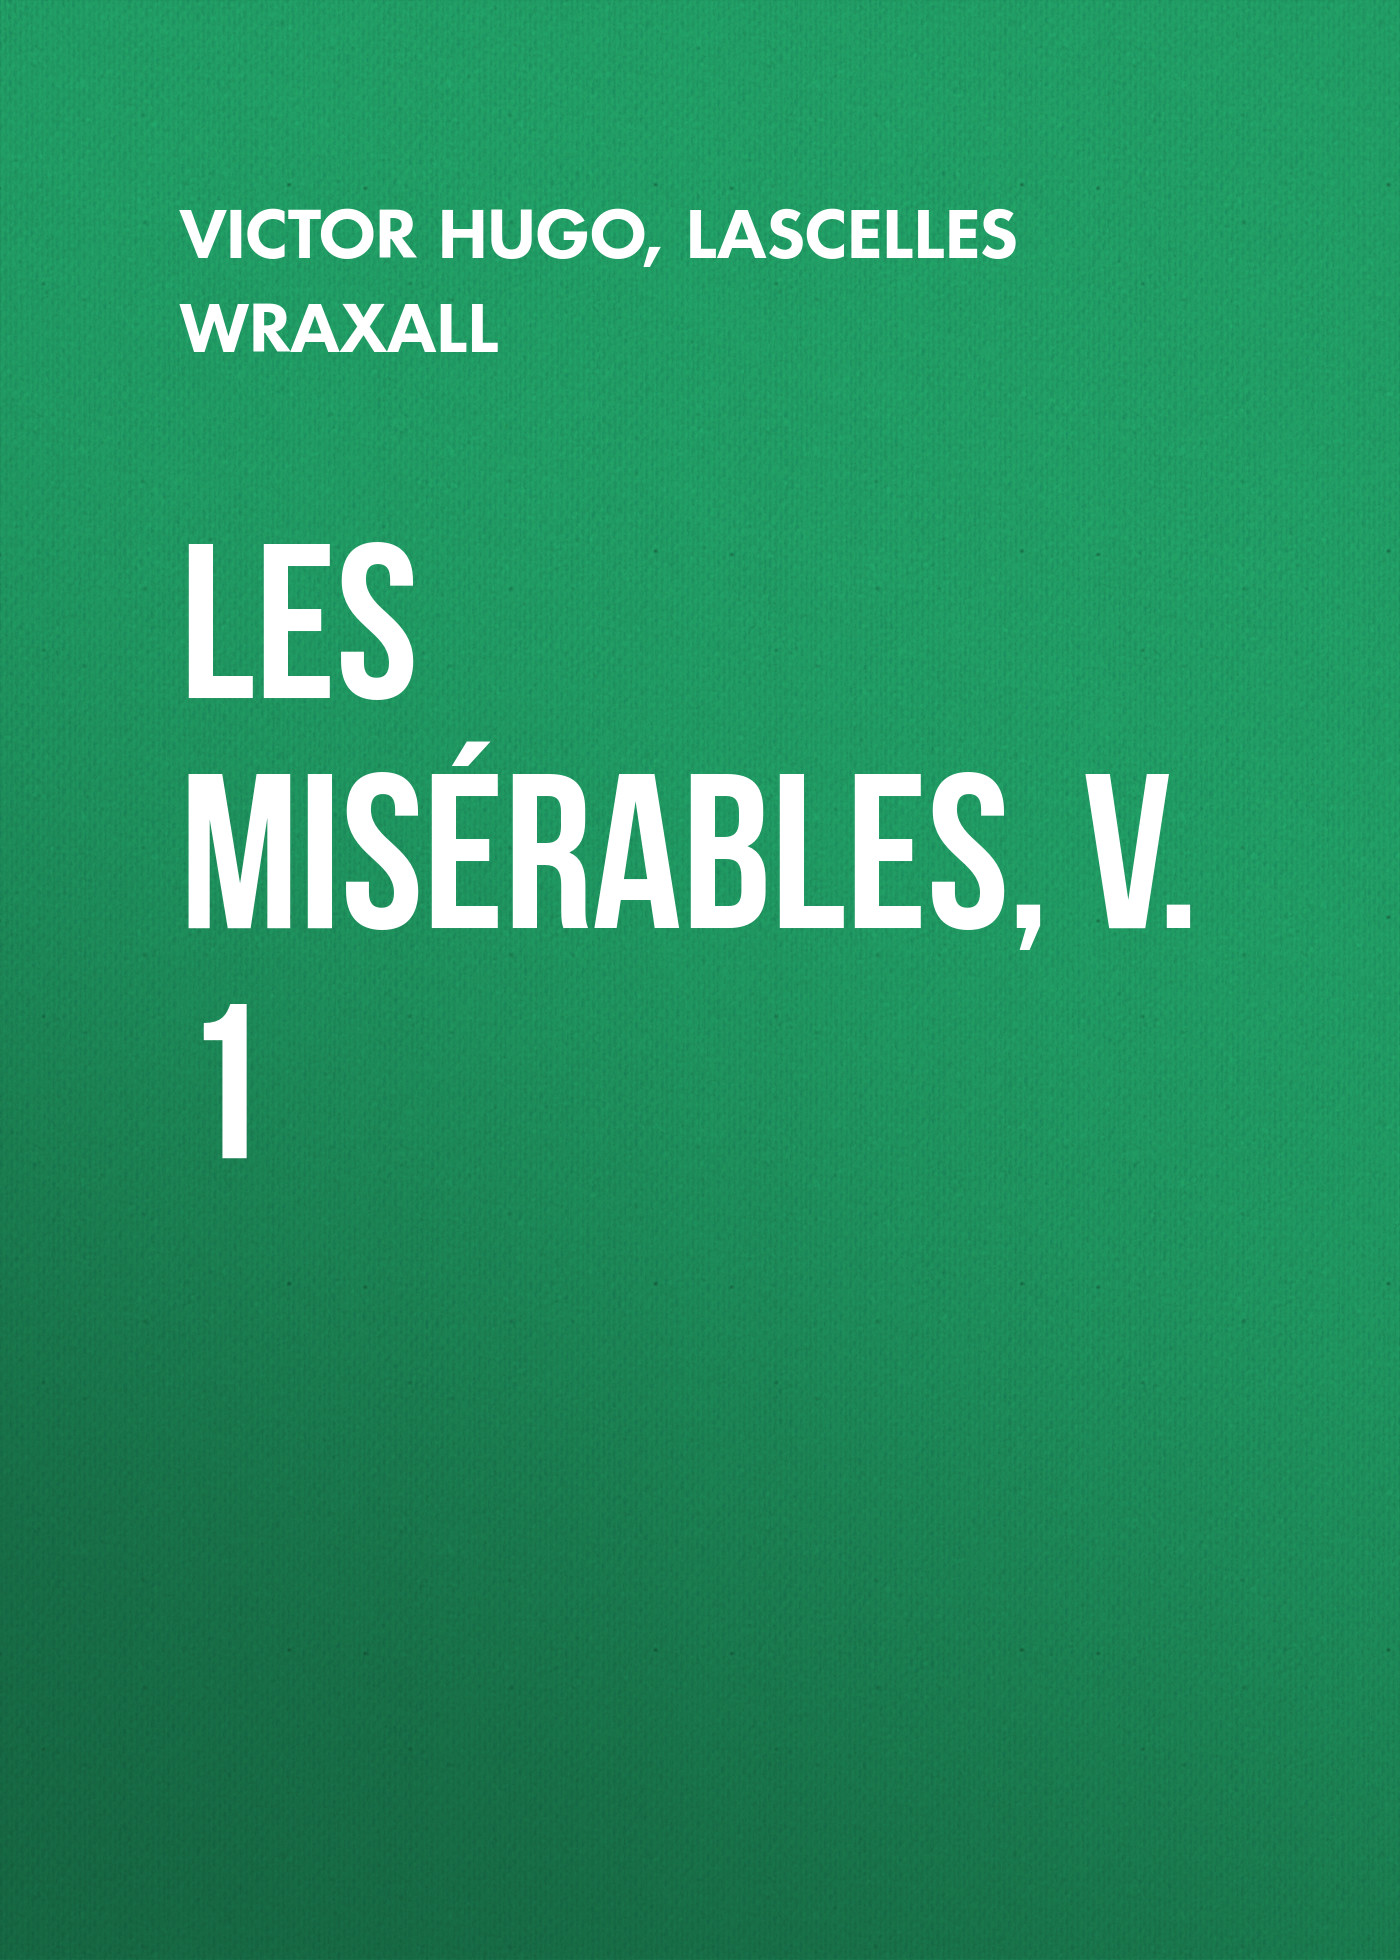 Книга Les Misérables, v. 1 из серии , созданная Lascelles Wraxall, Victor Hugo, может относится к жанру Литература 19 века, Зарубежная старинная литература, Зарубежная классика. Стоимость электронной книги Les Misérables, v. 1 с идентификатором 25230332 составляет 0 руб.